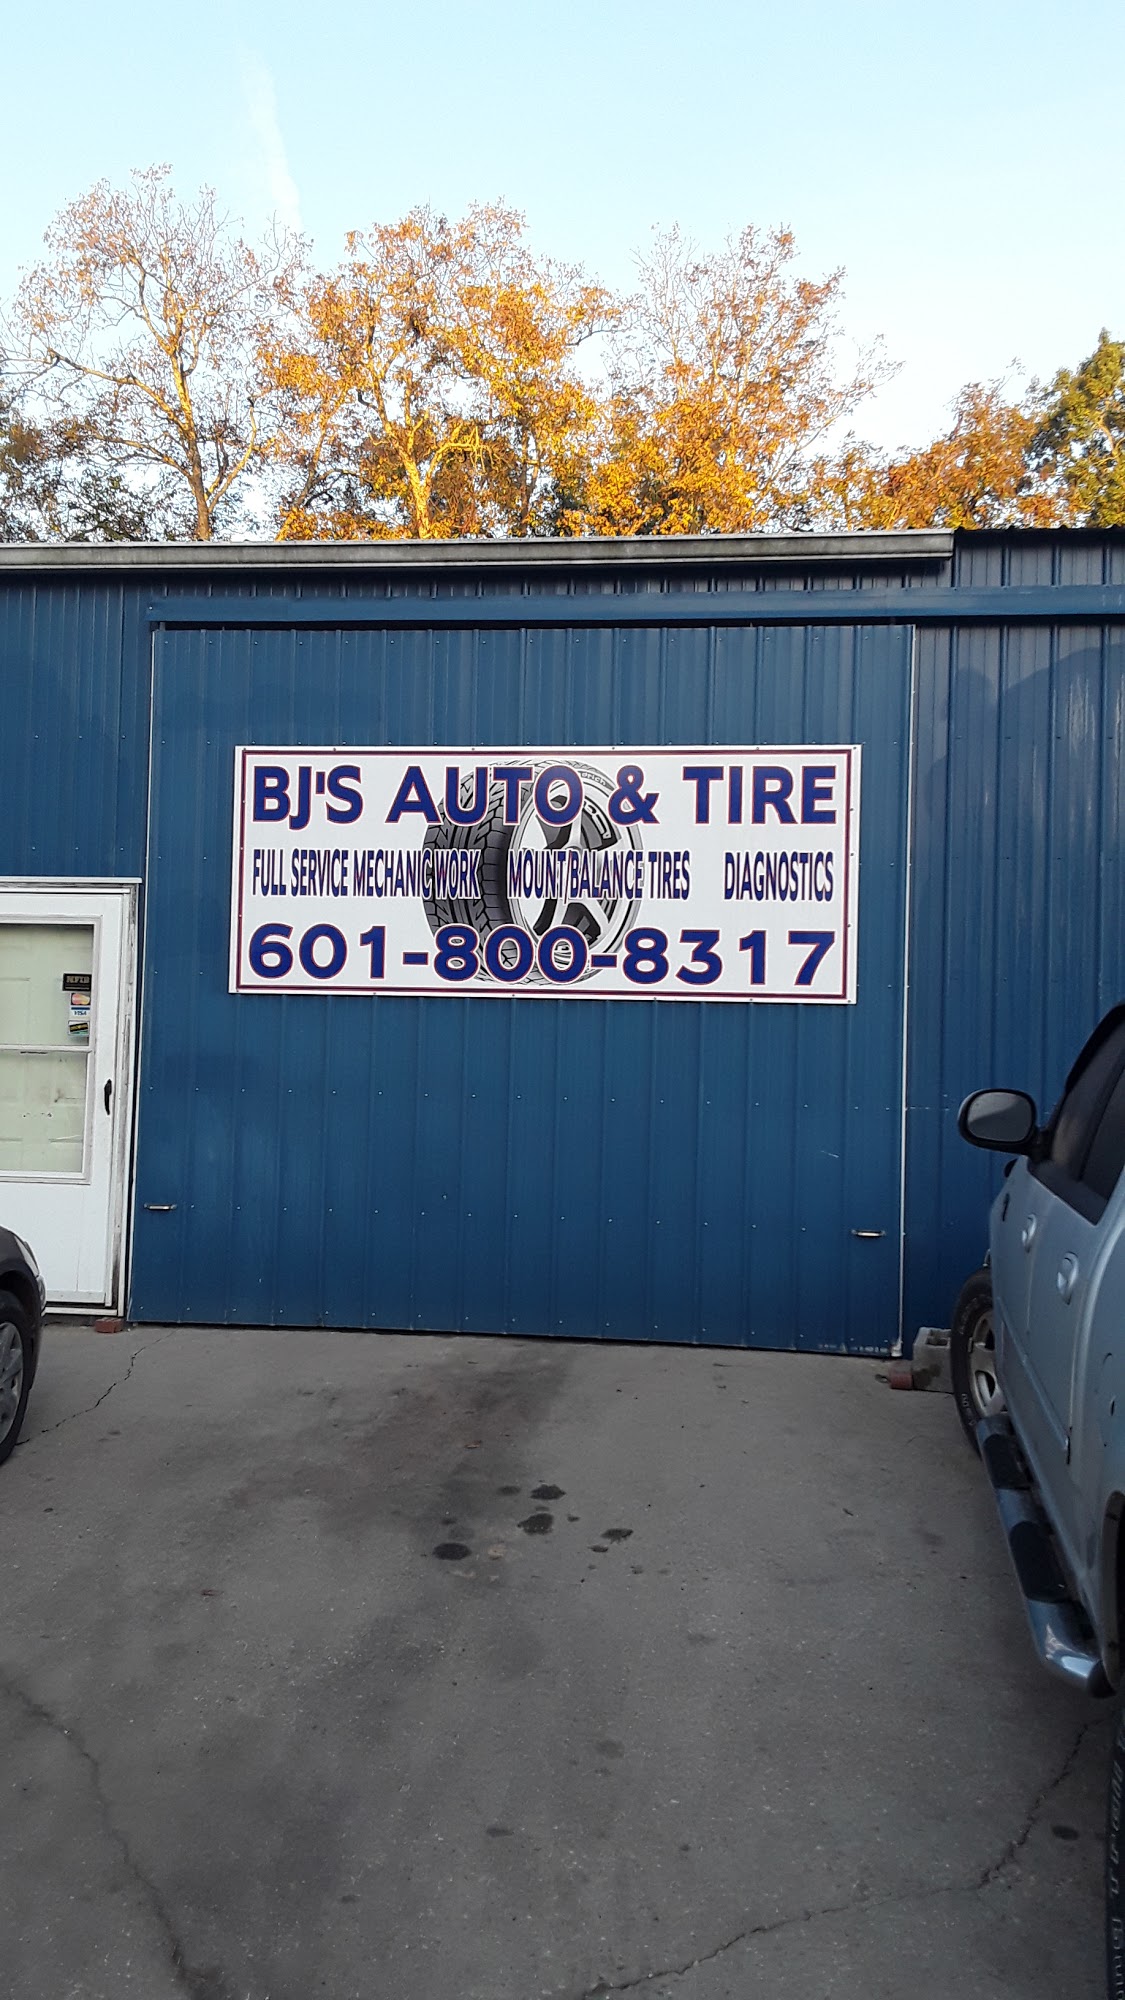 BJ's Auto & Tire